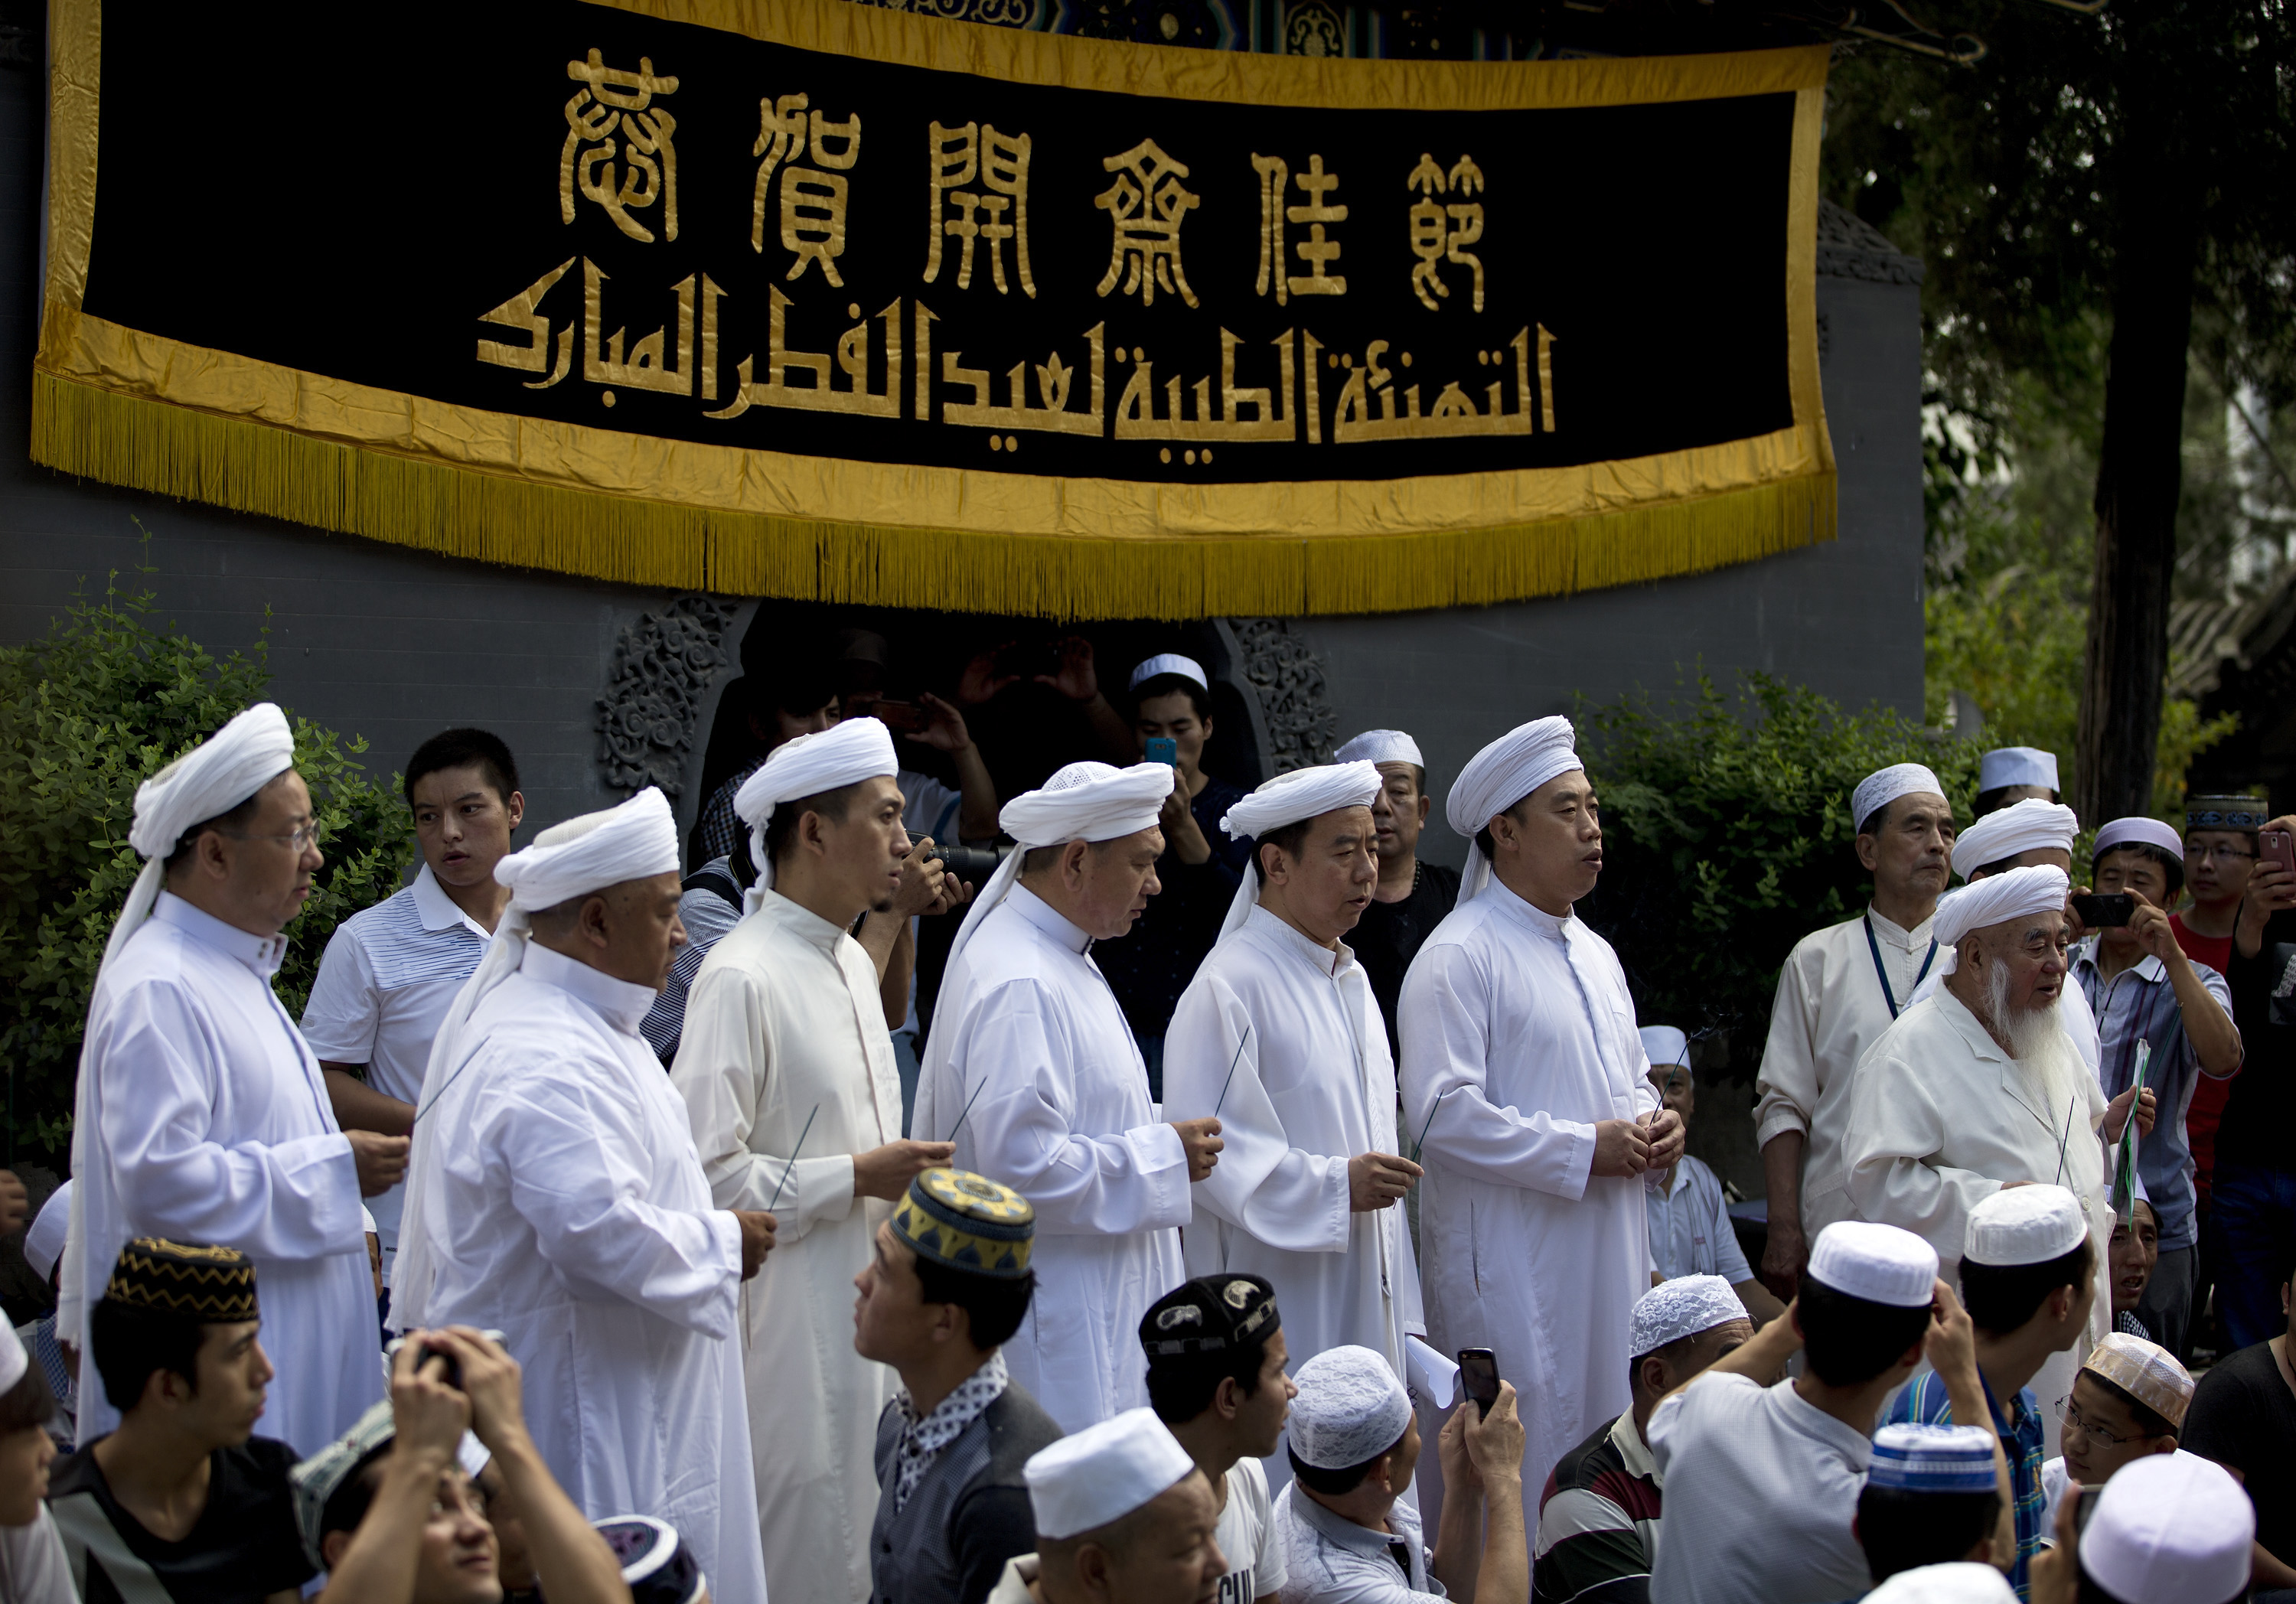 उइगुर मुसलमानमाथि भएको दमनको रिपोर्ट सार्वजनिक, चीन असन्तुष्ट